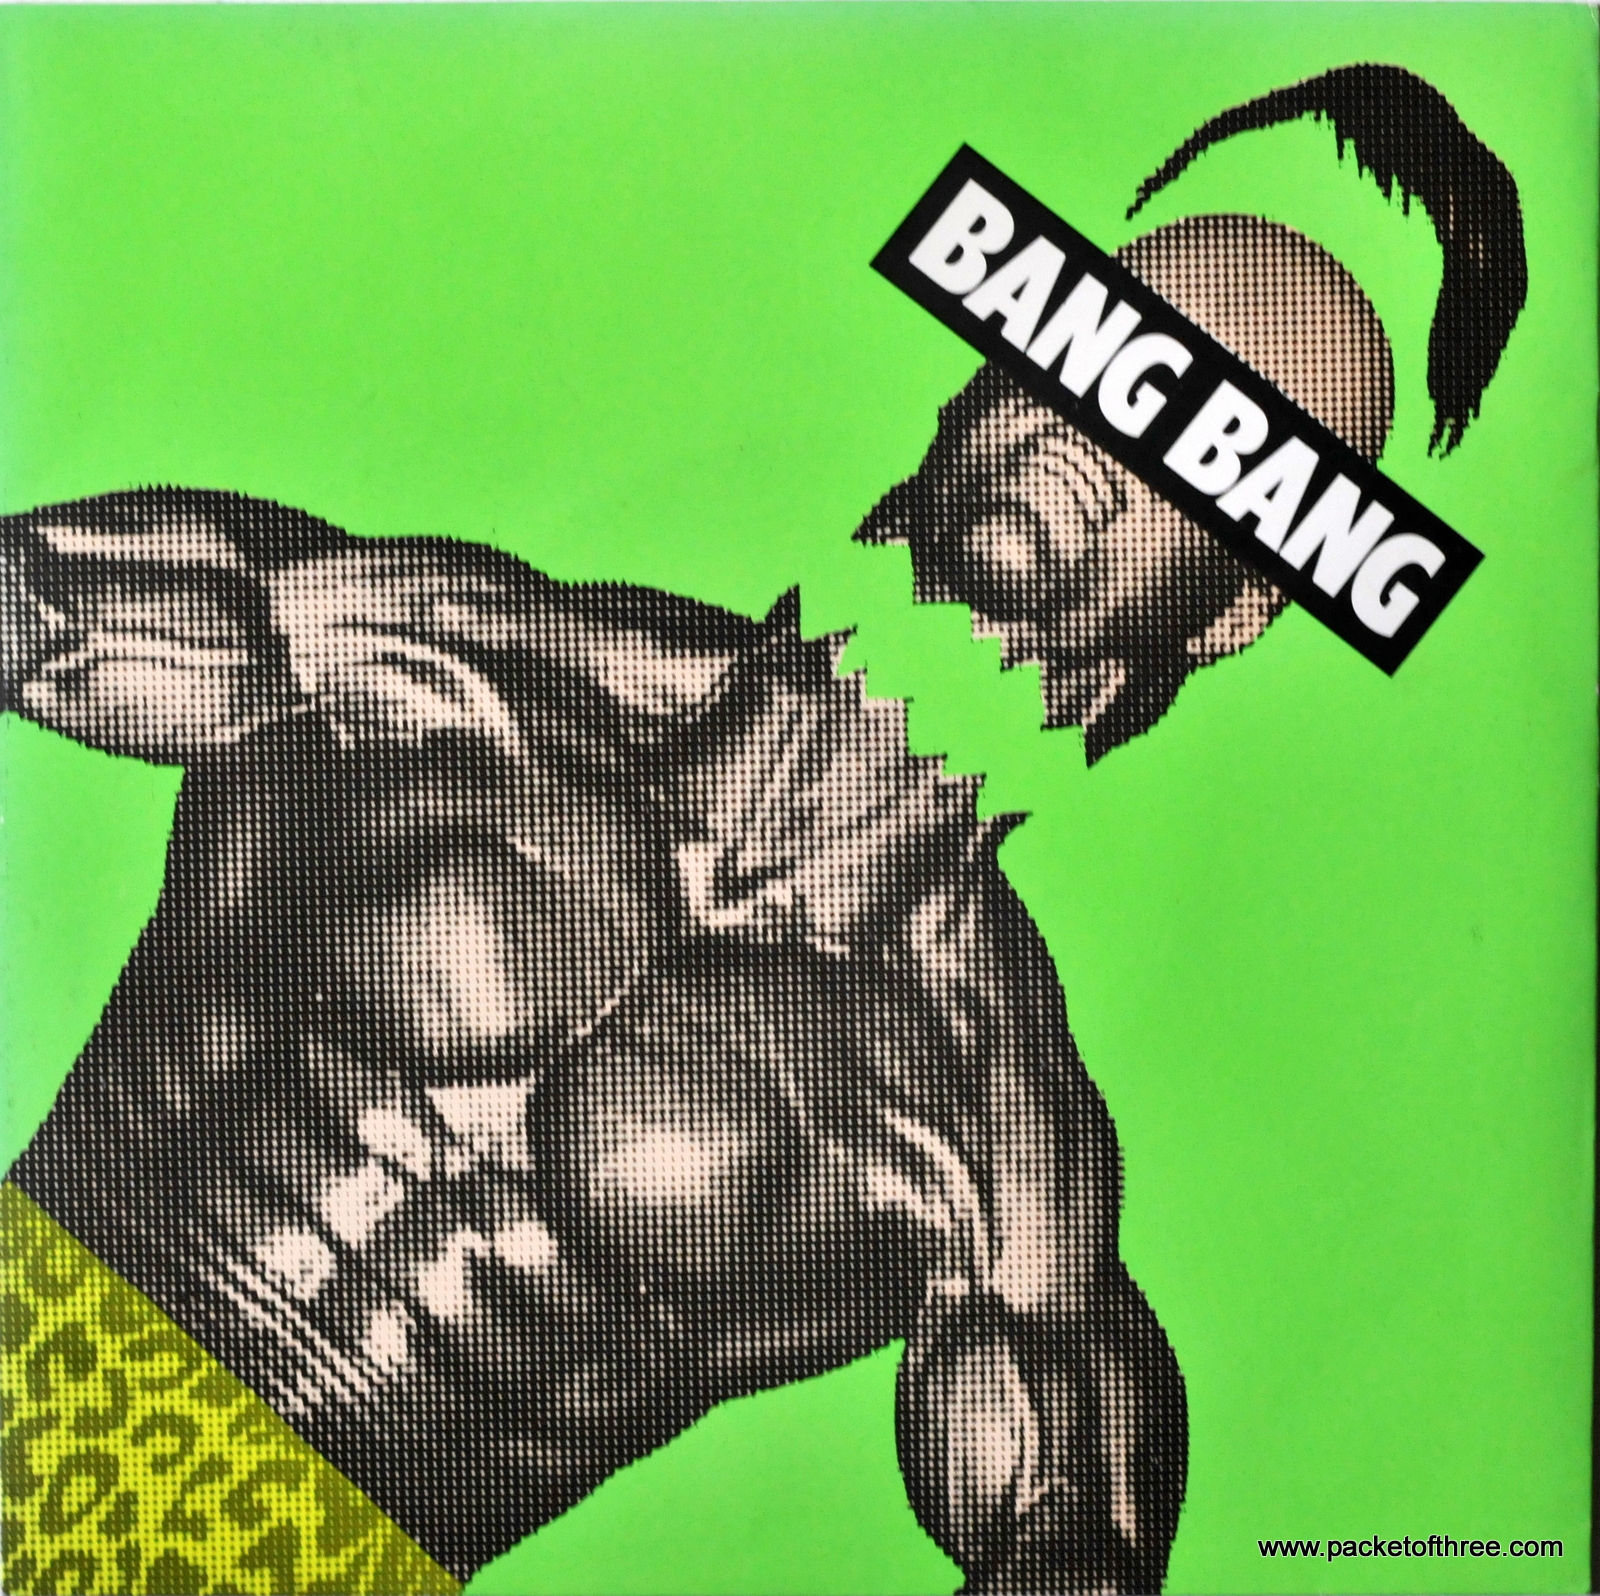 Bang Bang – UK – 7″ – picture sleeve